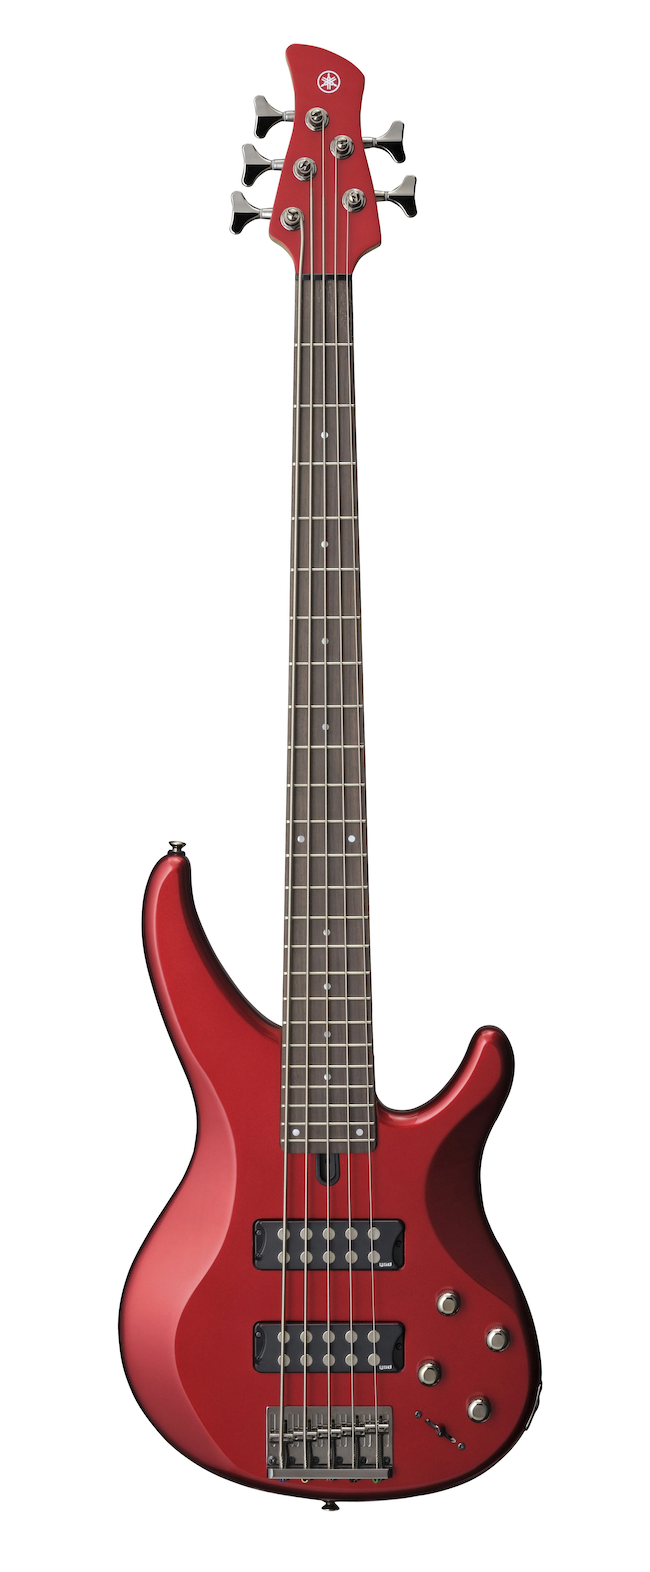 Yamaha TRBX305 5-String Bass Guitar - Candy Apple Red